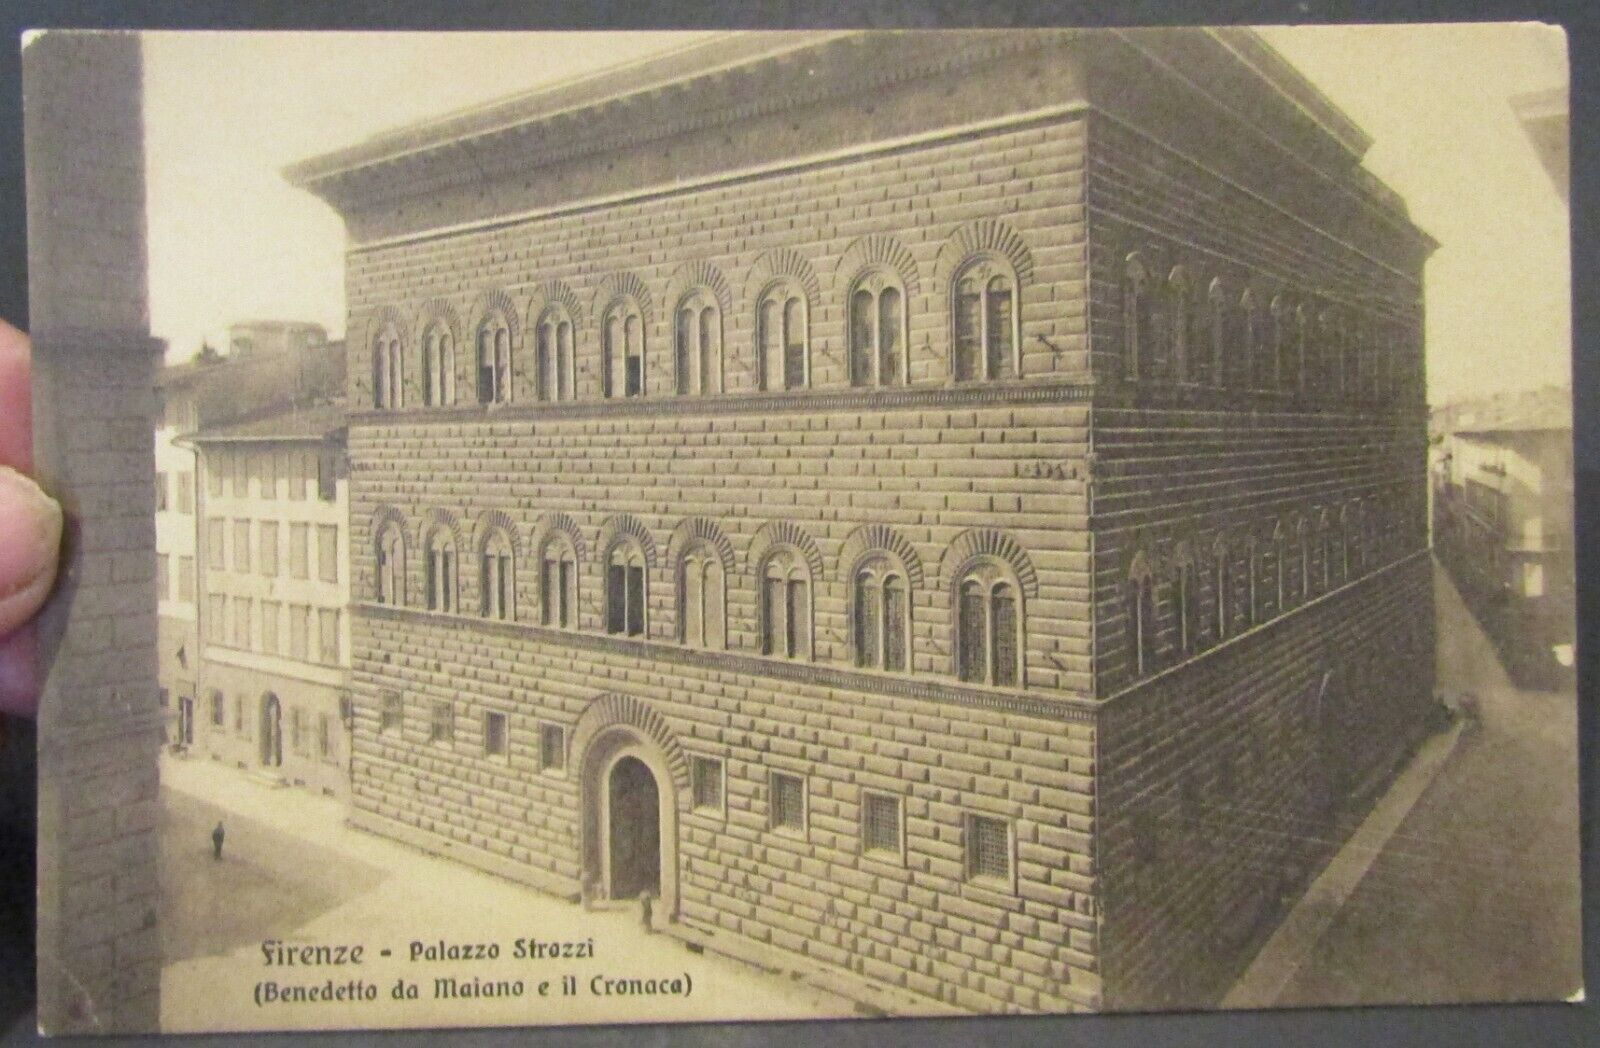 Antique Postcard - Firenze - Palazzo Strozzi (Benedetto da Maiano e il Cronaca